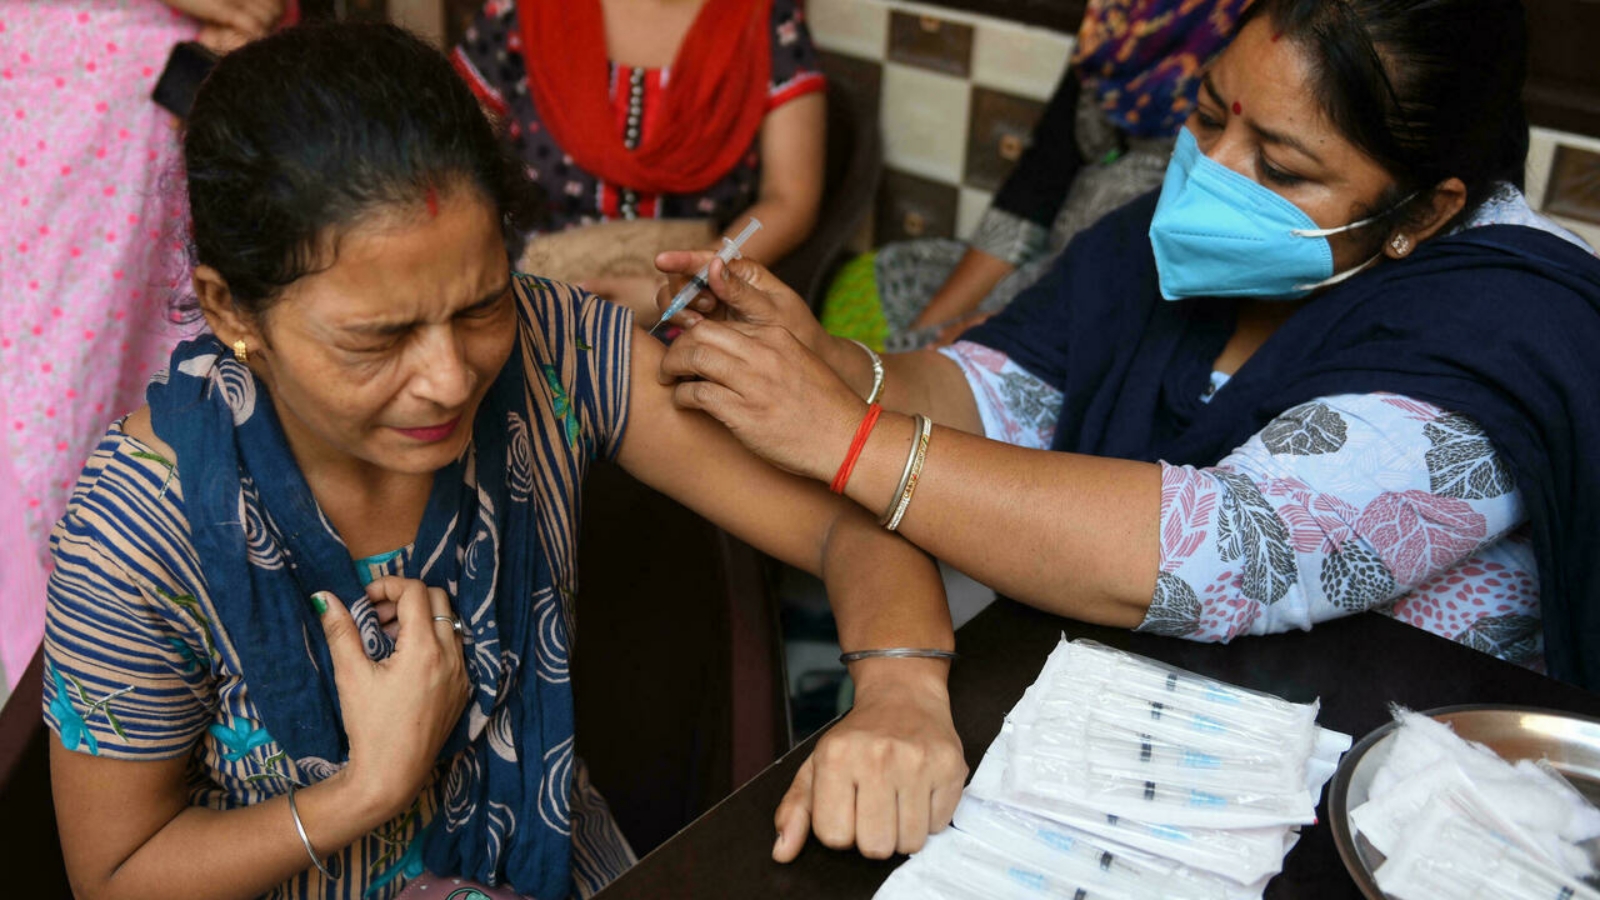 البلدان الناشئة ستتحمل العبء الأكبر من الخسائر الناجمة عن جهود التطعيم البطيئة، وفقًا لوحدة المعلومات الإقتصادية.